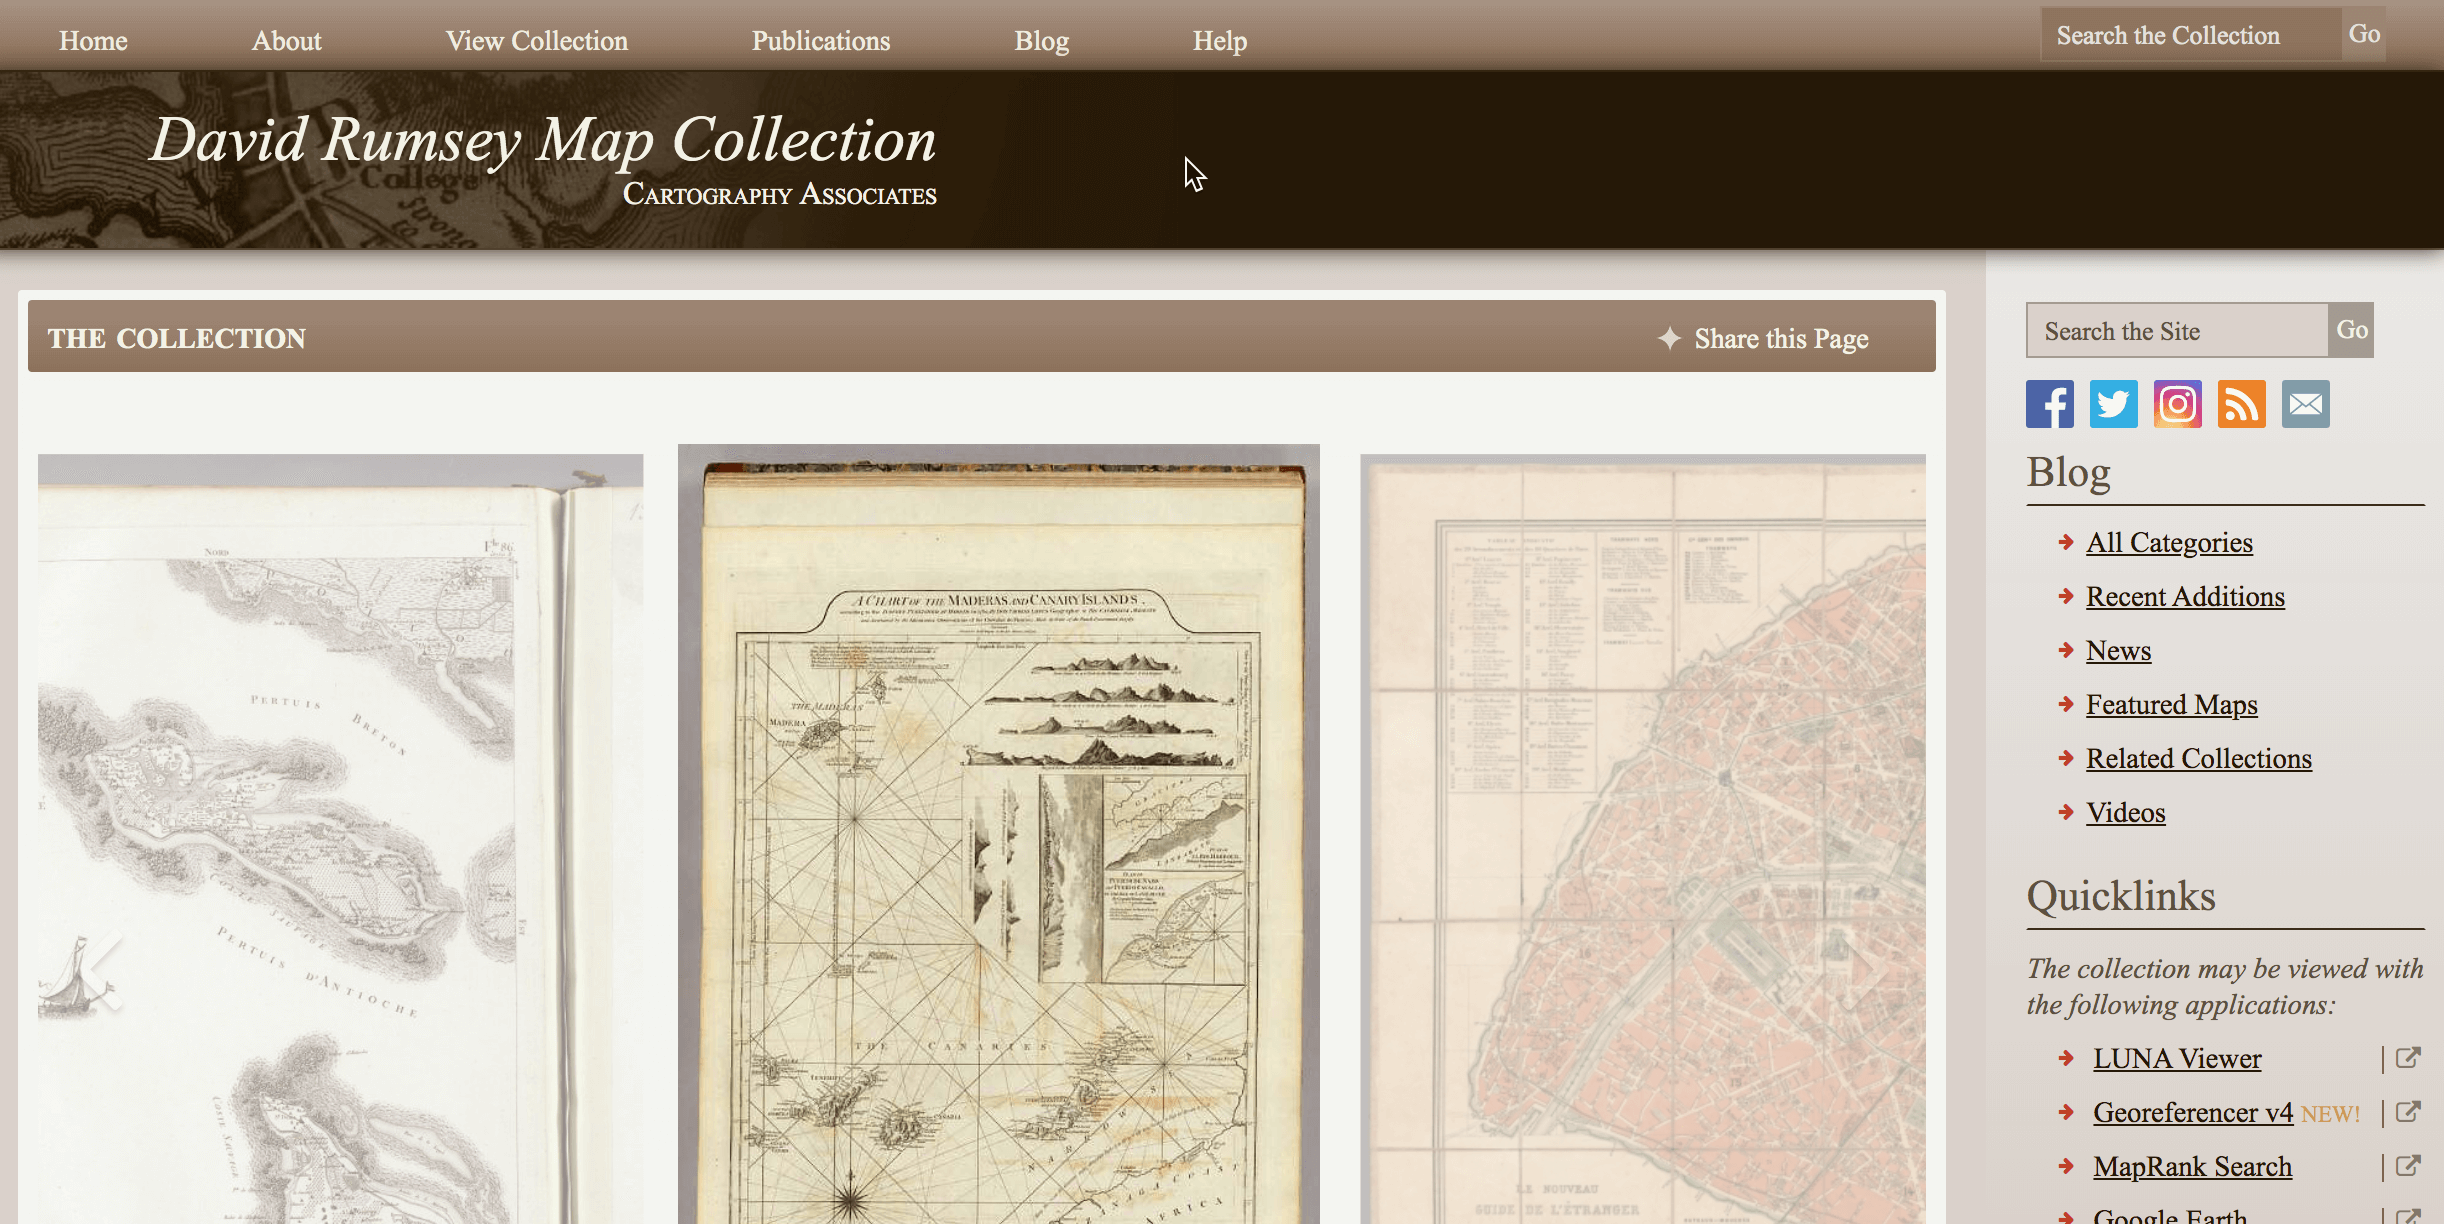 典藏了世界上最古老的各种地图 也许比谷歌地图都还要齐全 里面不单单只要地图 更有相关的历史信息和资料 最重要的是所有的地图 都可以按照各种尺寸导出来 不得不说 这个网站简直就是地图爱好者的博物馆呀